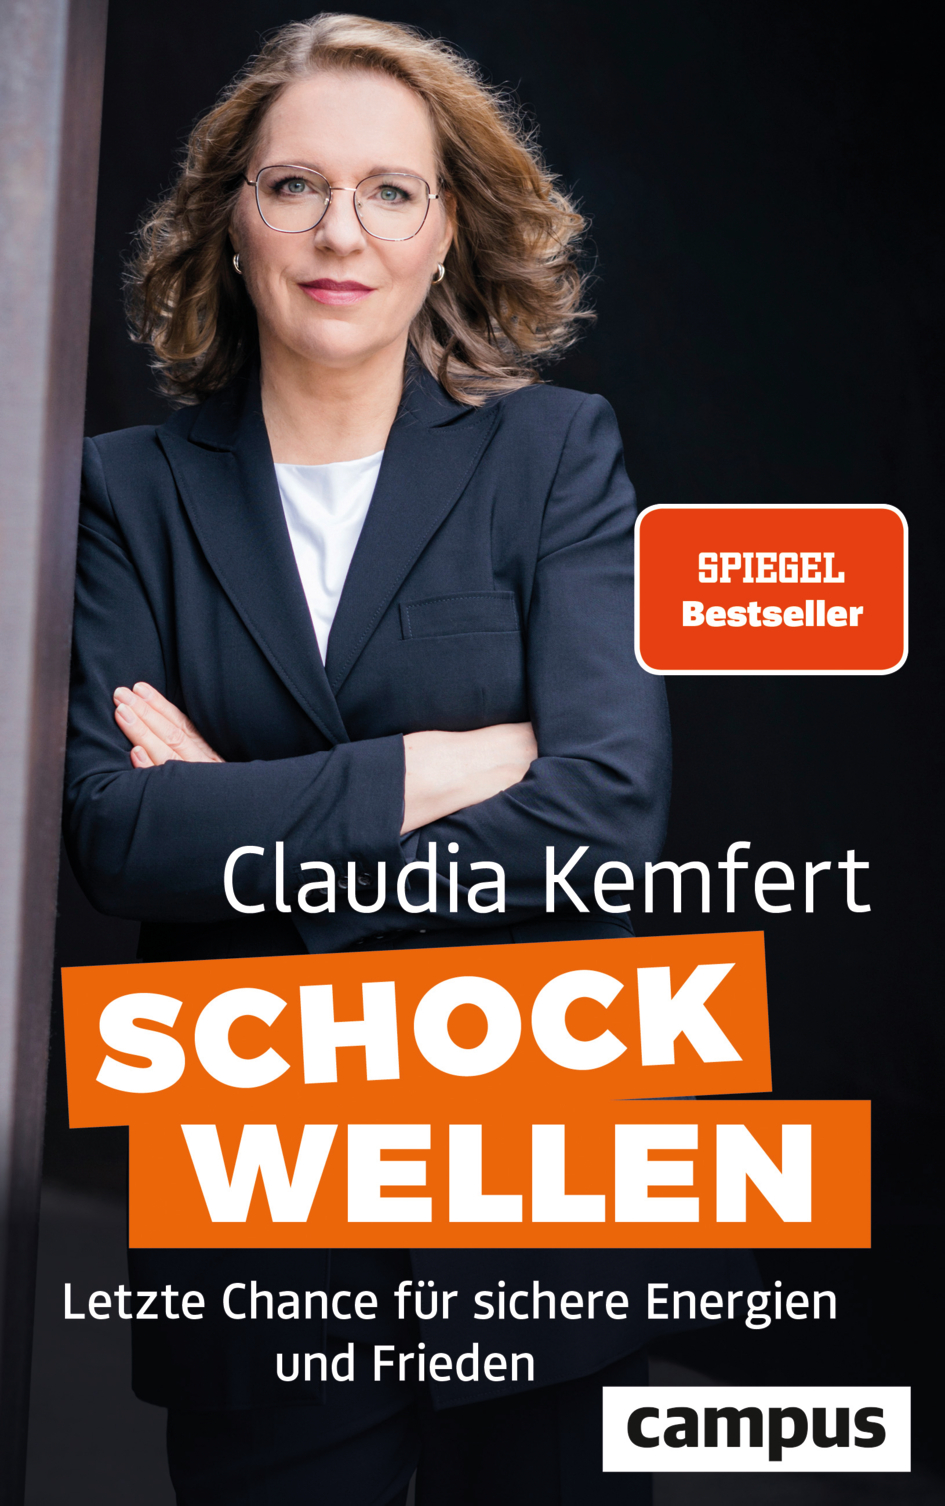 Claudia Kemfert: Schockwellen: Letzte Chance für sichere Energien und Frieden (2023, Campus Verlag)